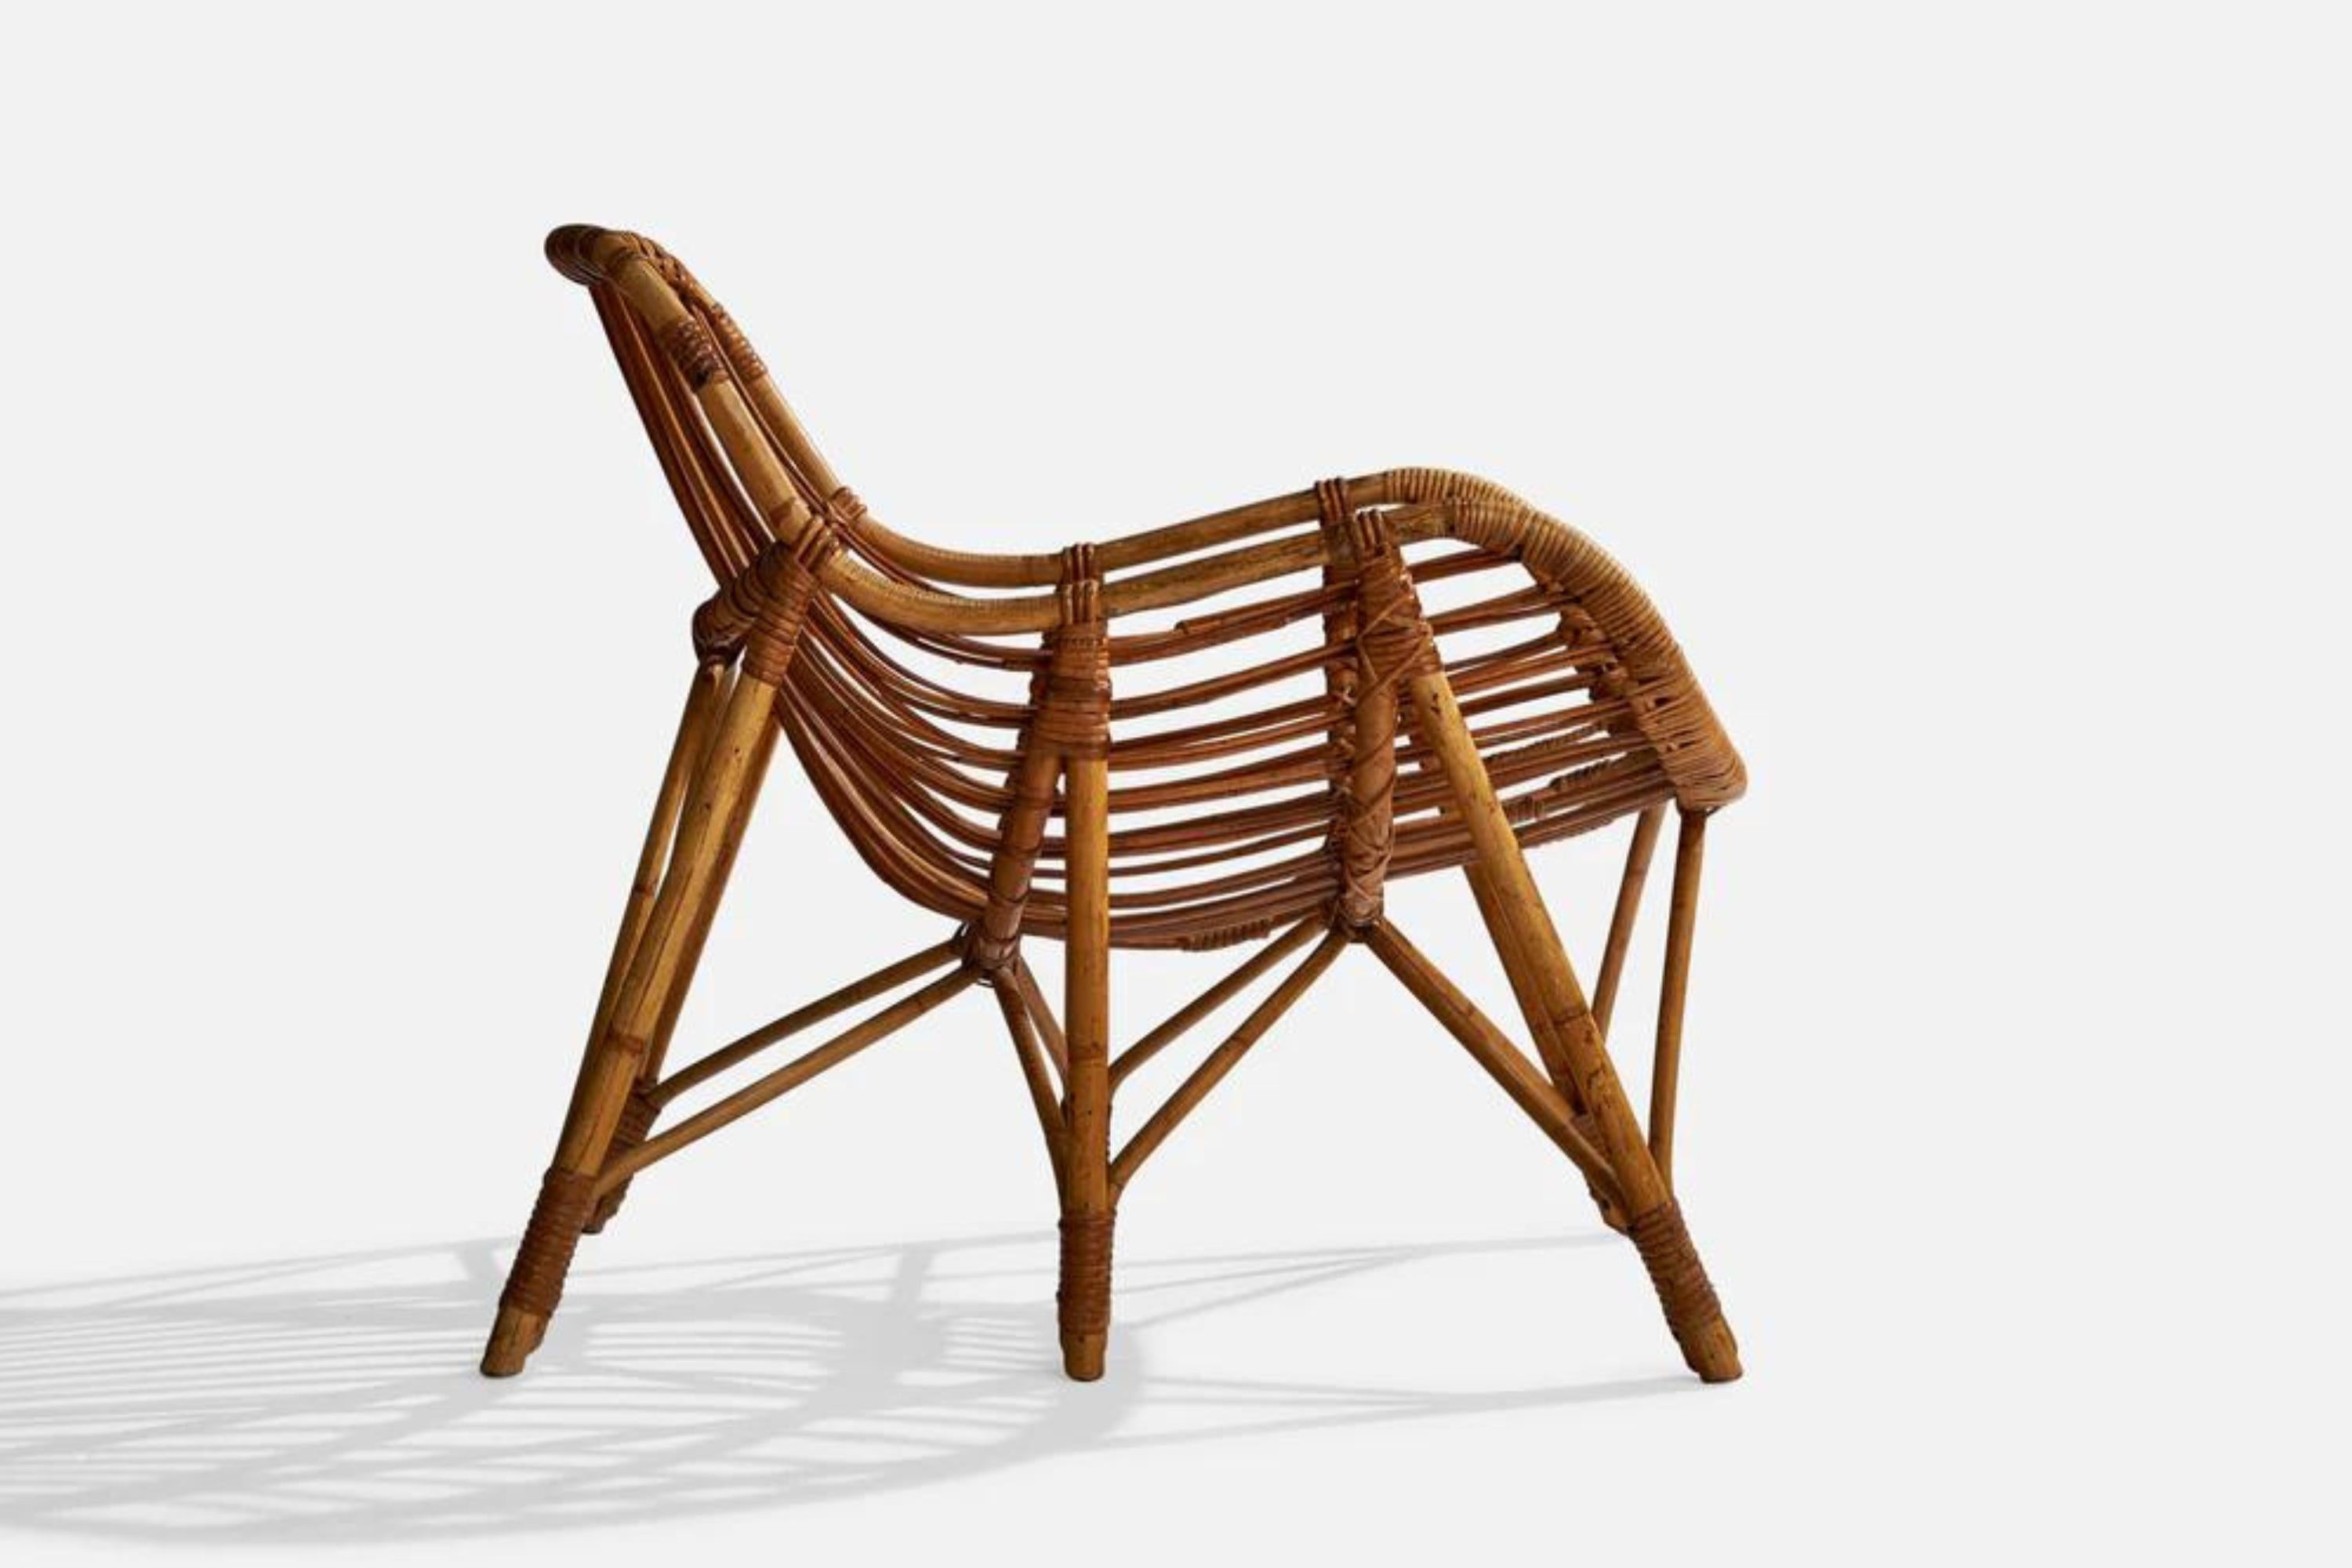 Ein Loungesessel aus geformtem Bambus und Rattan, entworfen und hergestellt in Finnland, 1940er Jahre.

Sitzhöhe 14,25